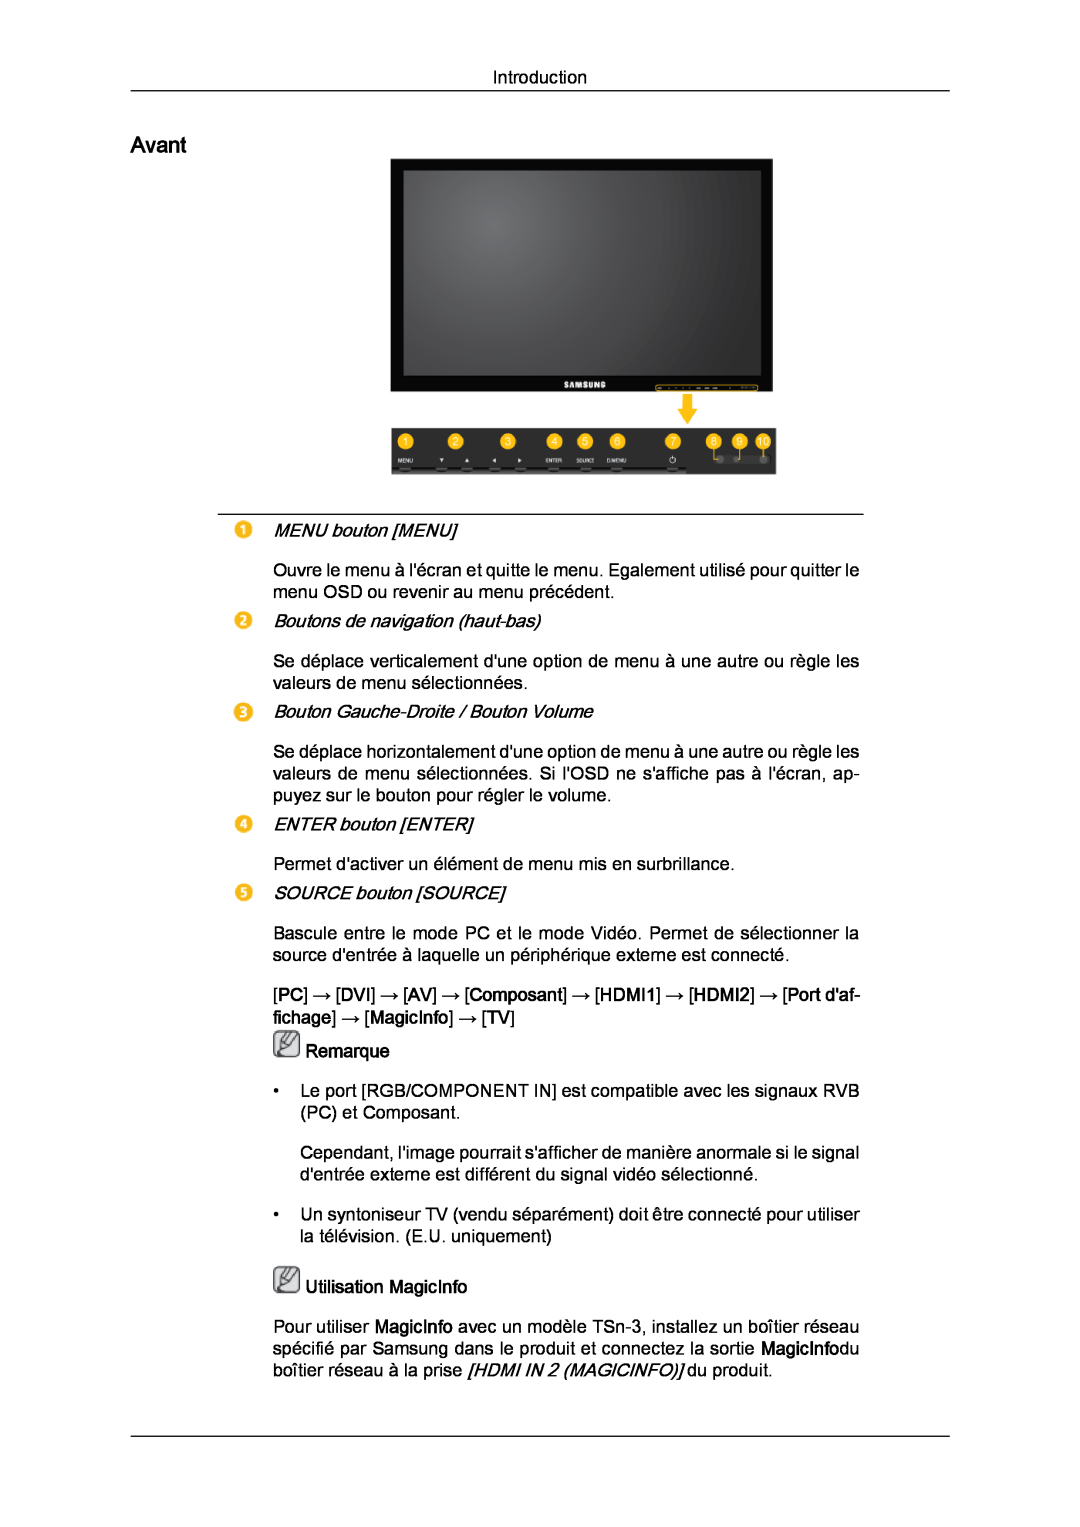 Samsung LH32CRTMBC/EN manual Avant, MENU bouton MENU, Boutons de navigation haut-bas, Bouton Gauche-Droite / Bouton Volume 